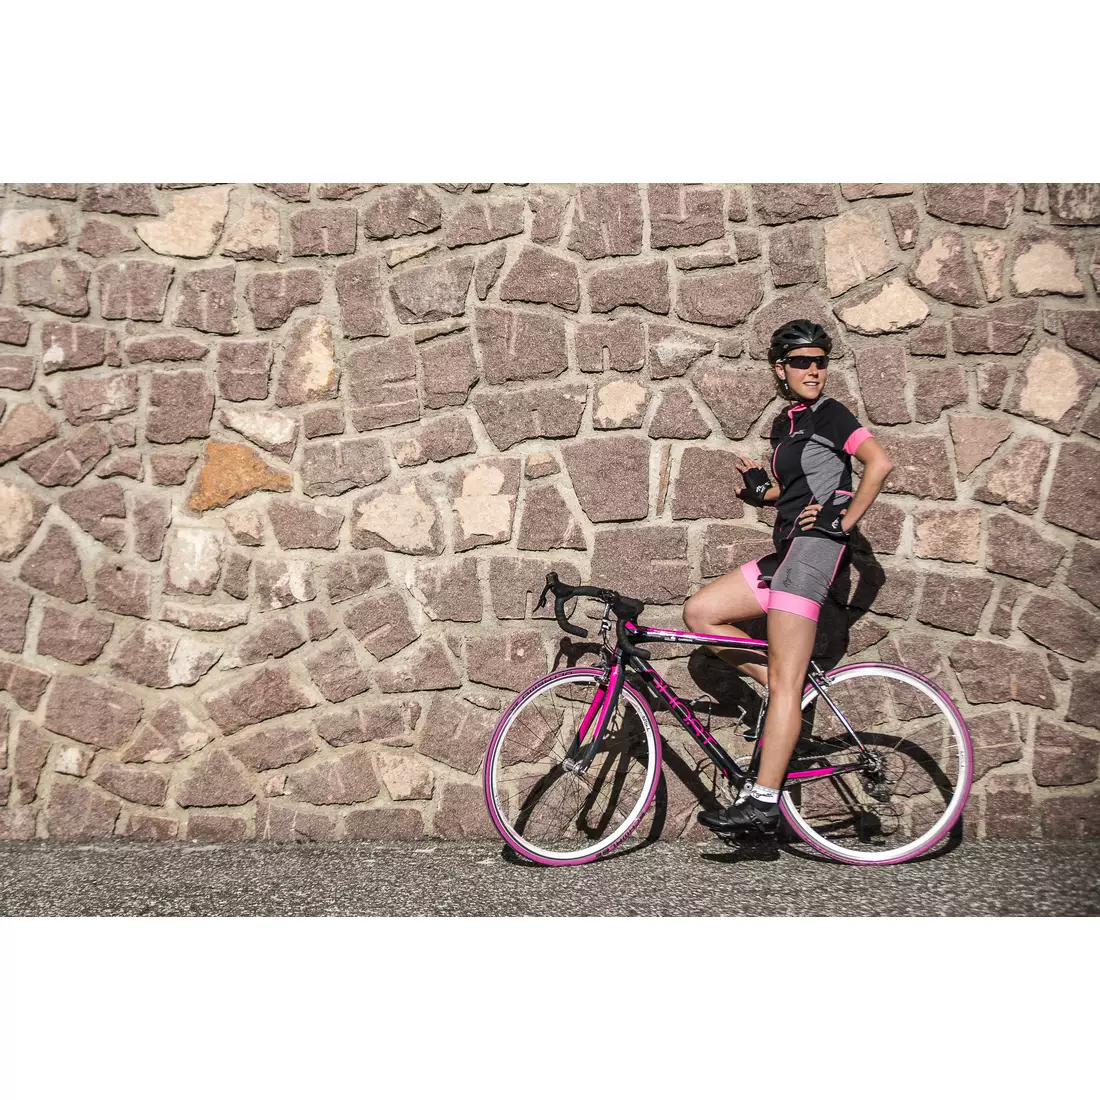 ROGELLI CARLYN - női kerékpáros mez 010.026, fekete és rózsaszín